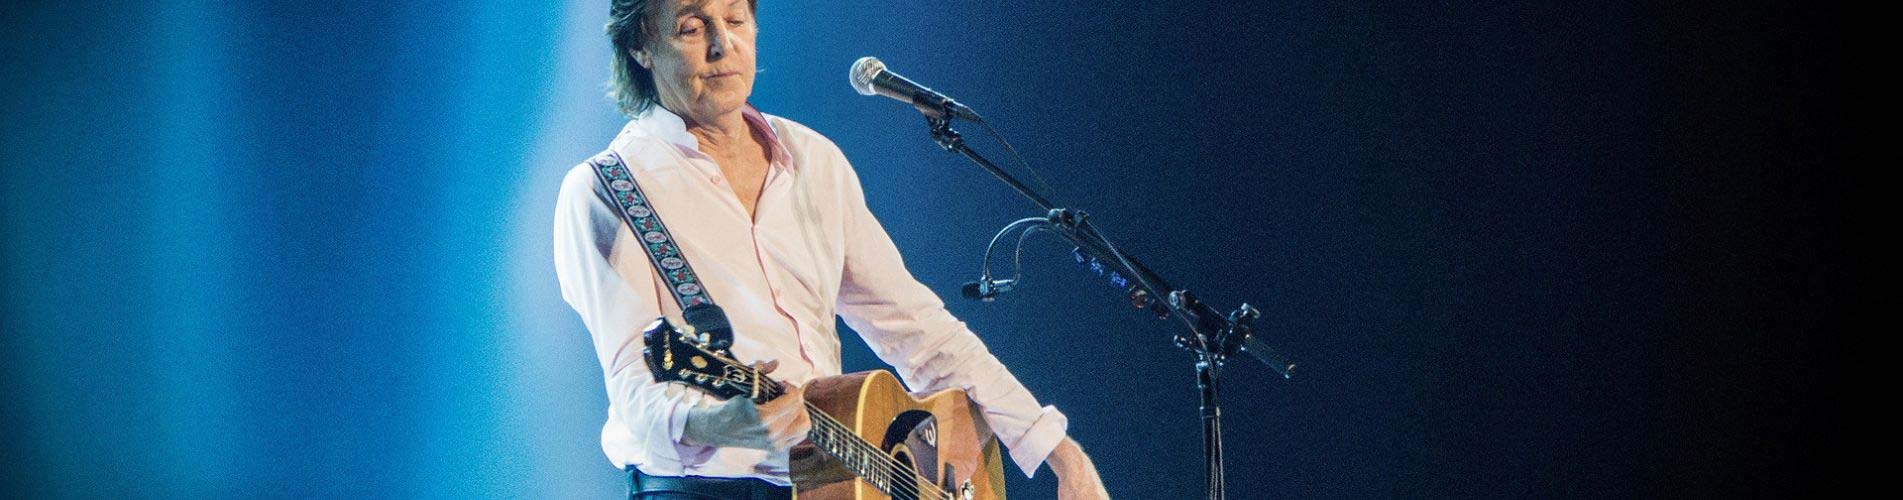 Paul McCartney jouant de la guitare